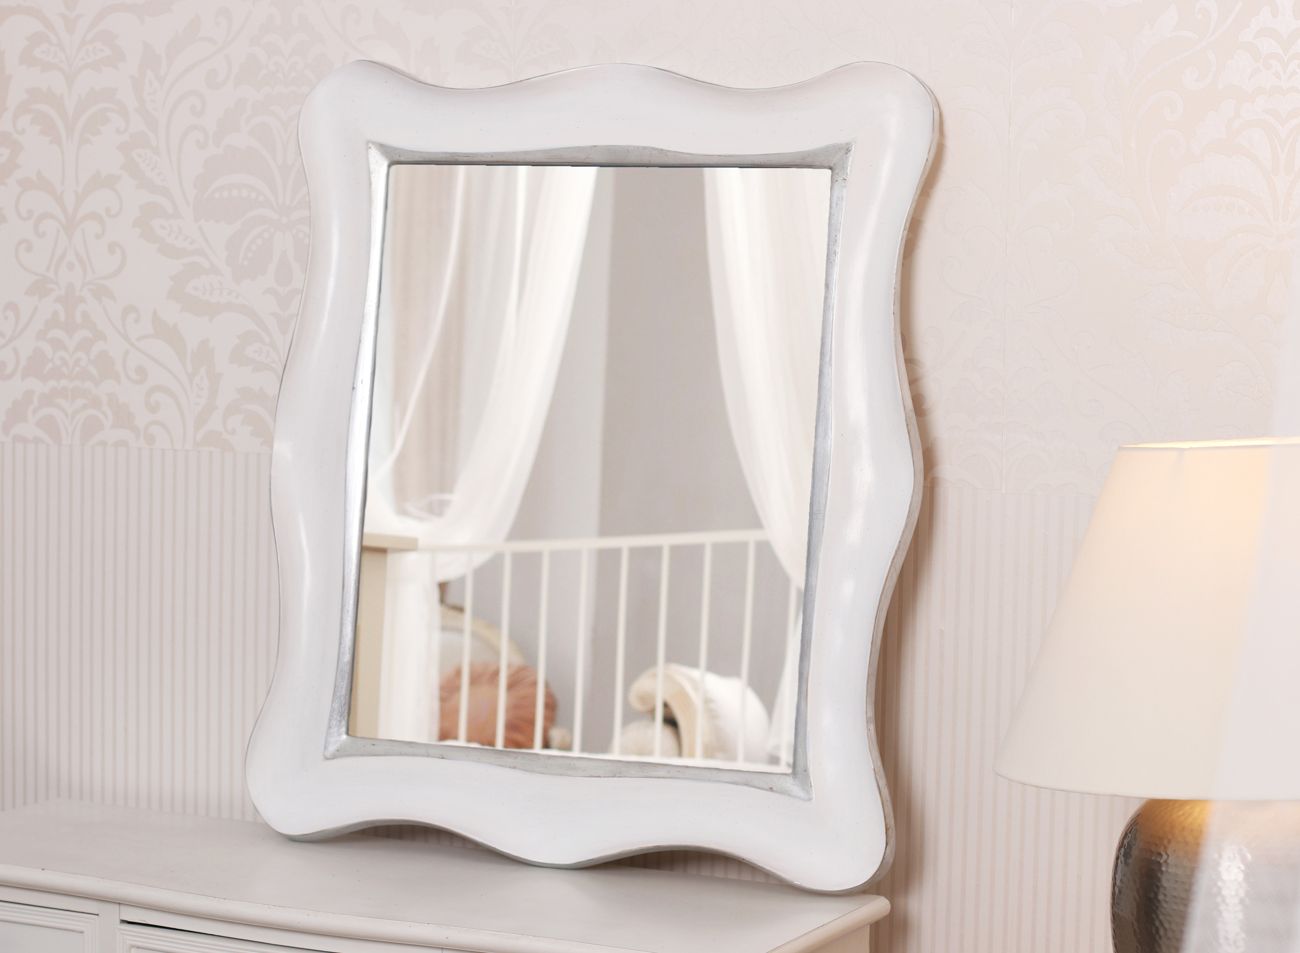 Malé luxusní zrcadlo v bílém zakázkově vyřezávaném rámu se zaoblenými rohy a tvarem vlny | © Frame-it.cz